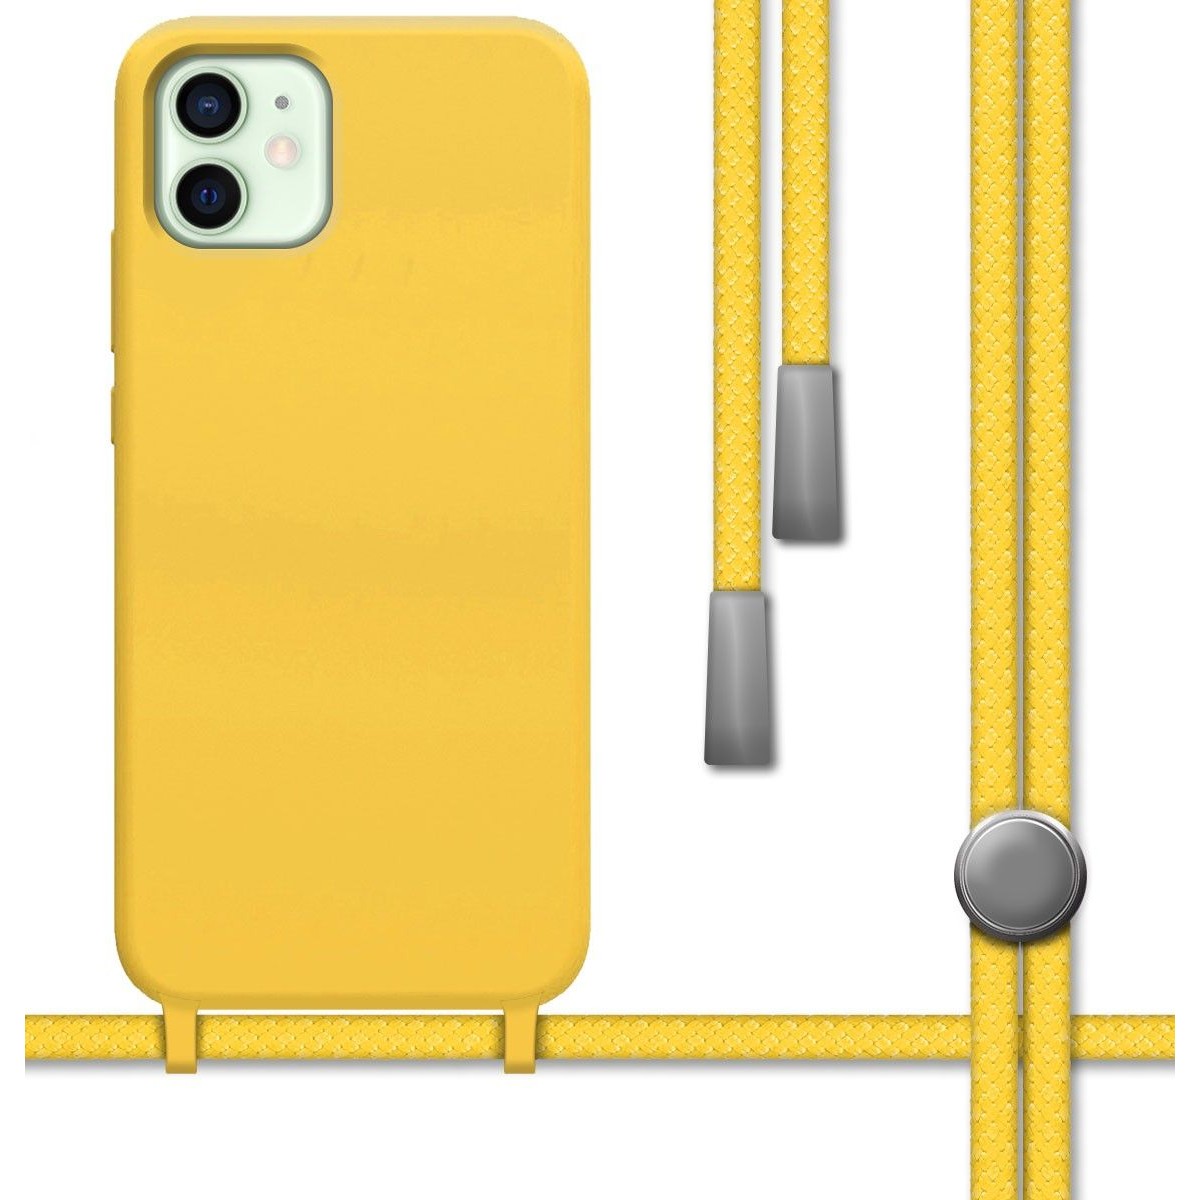 Funda Silicona Líquida con Cordón para Iphone 12 Mini (5.4) color Amarilla